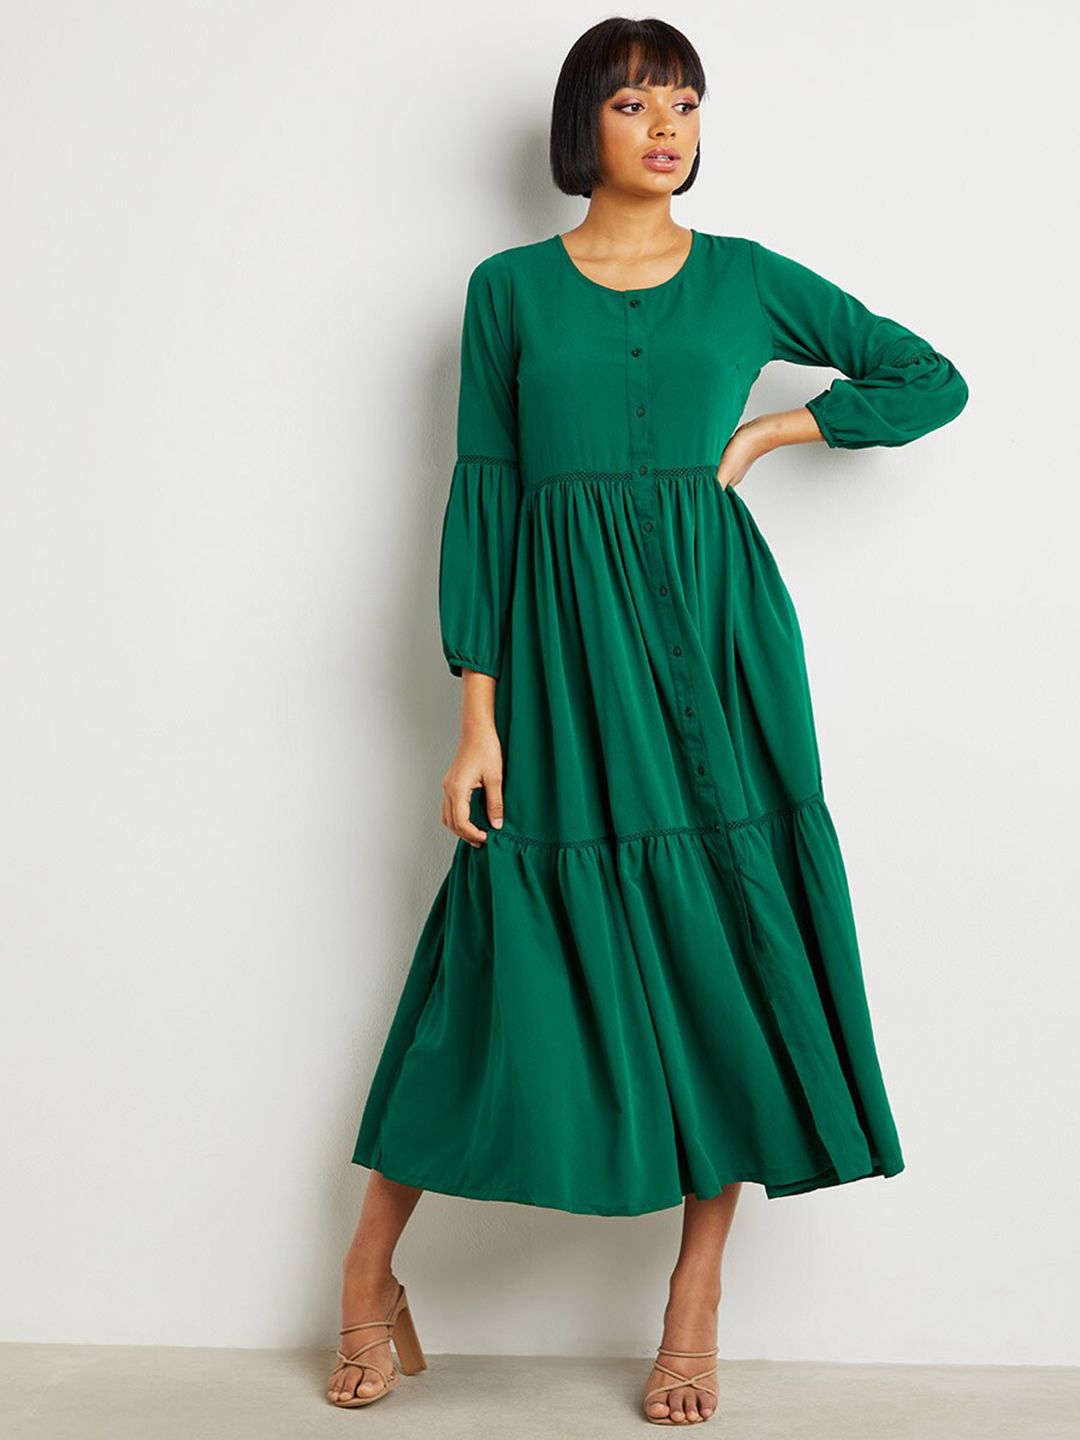 Styli Green Midi Dress Price in India